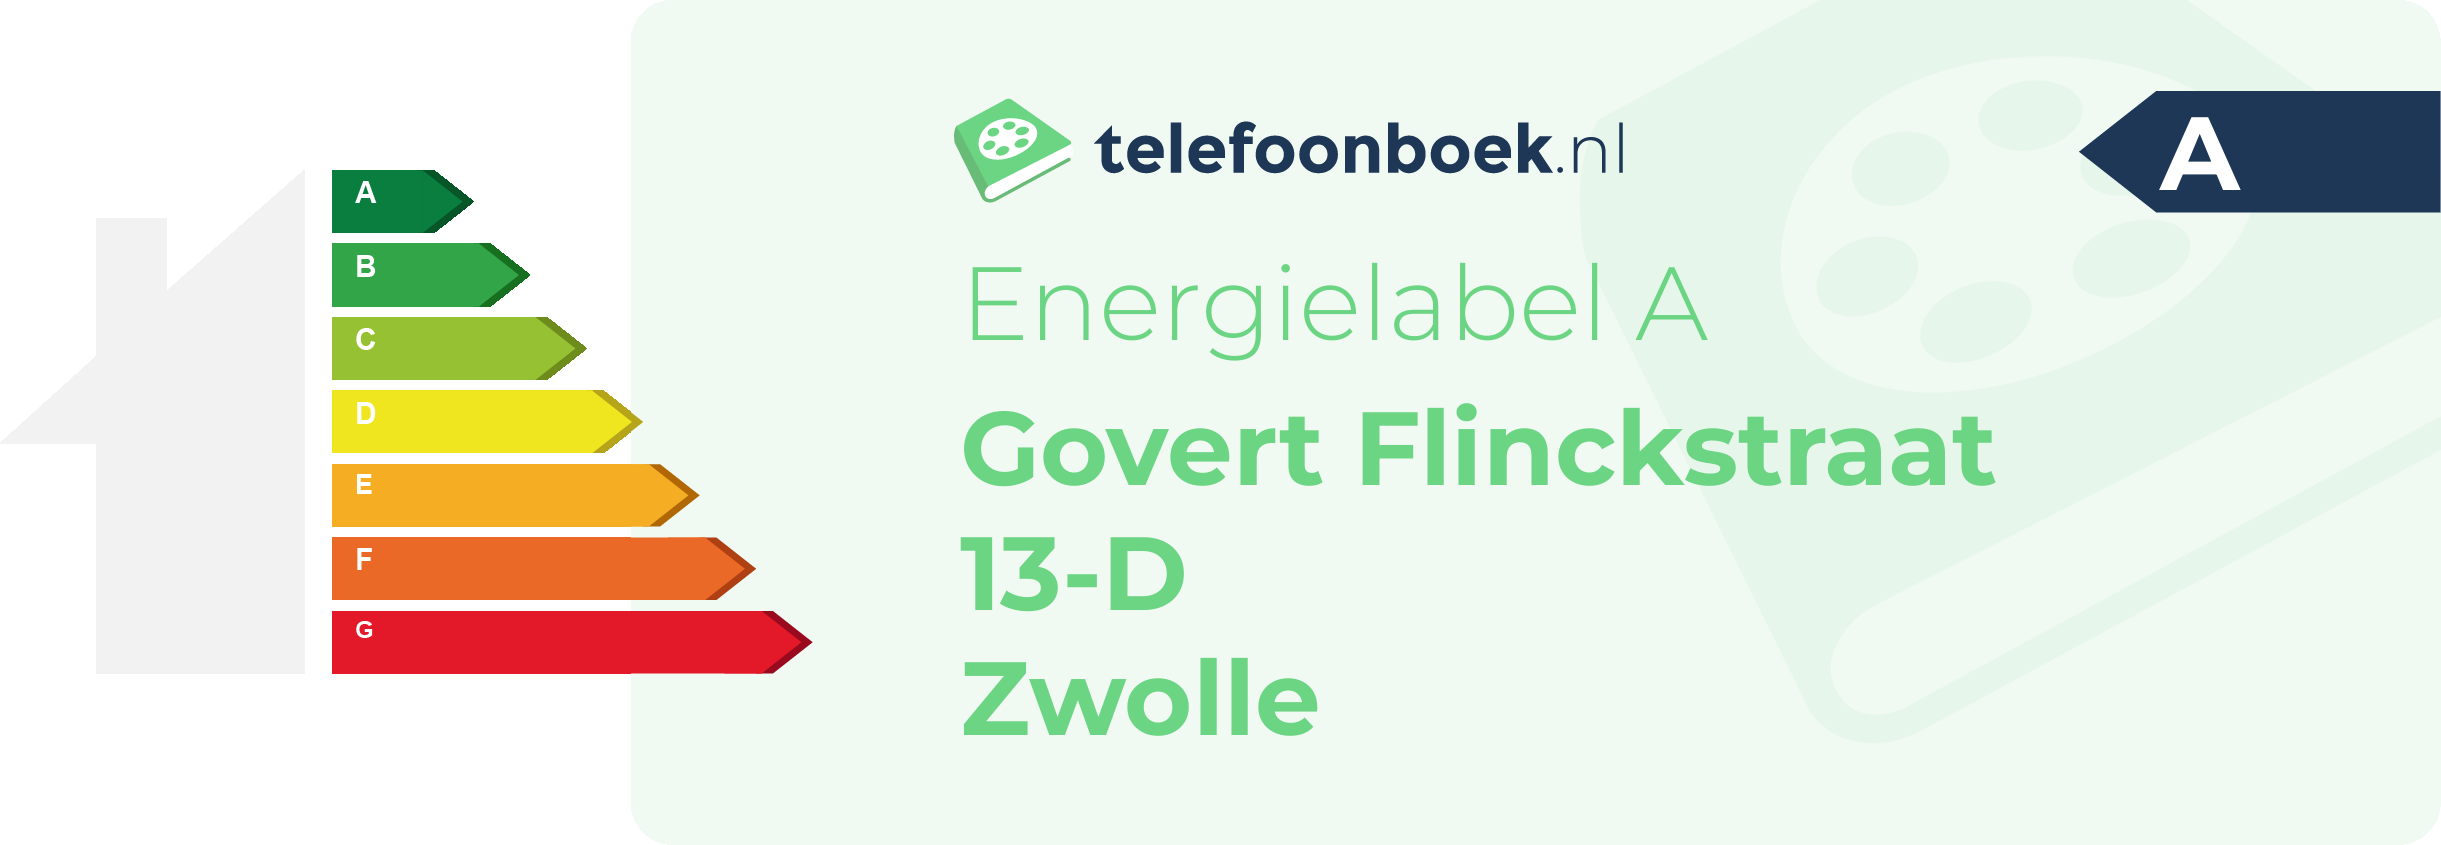 Energielabel Govert Flinckstraat 13-D Zwolle